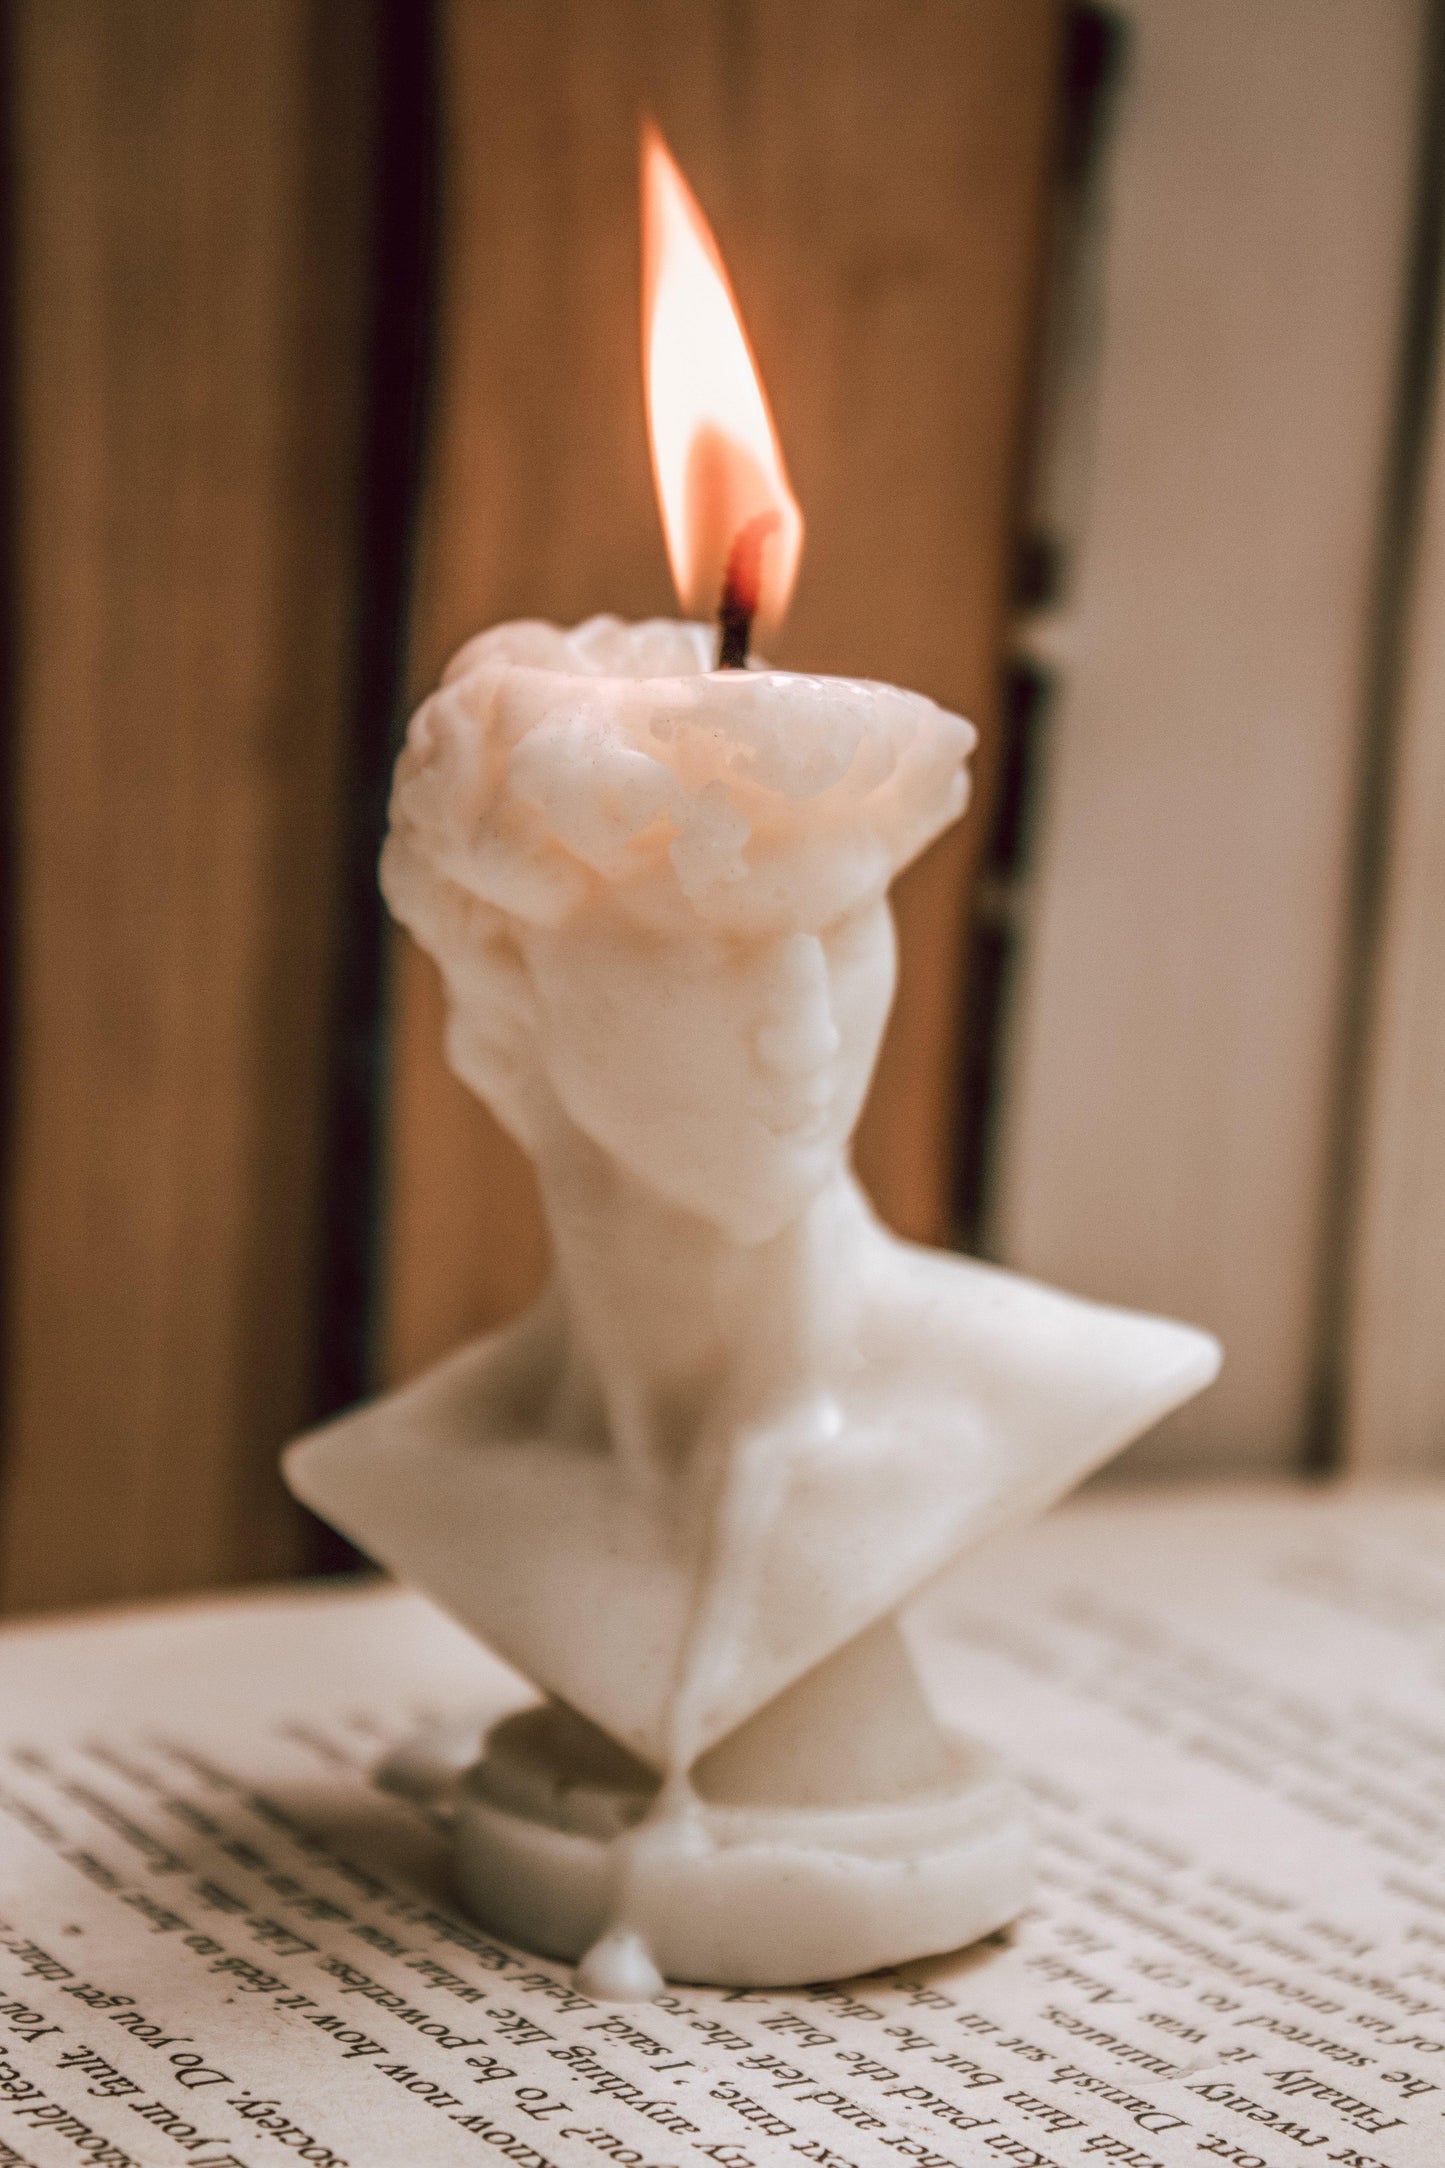 David Sculpture Candle - The Umbrella store